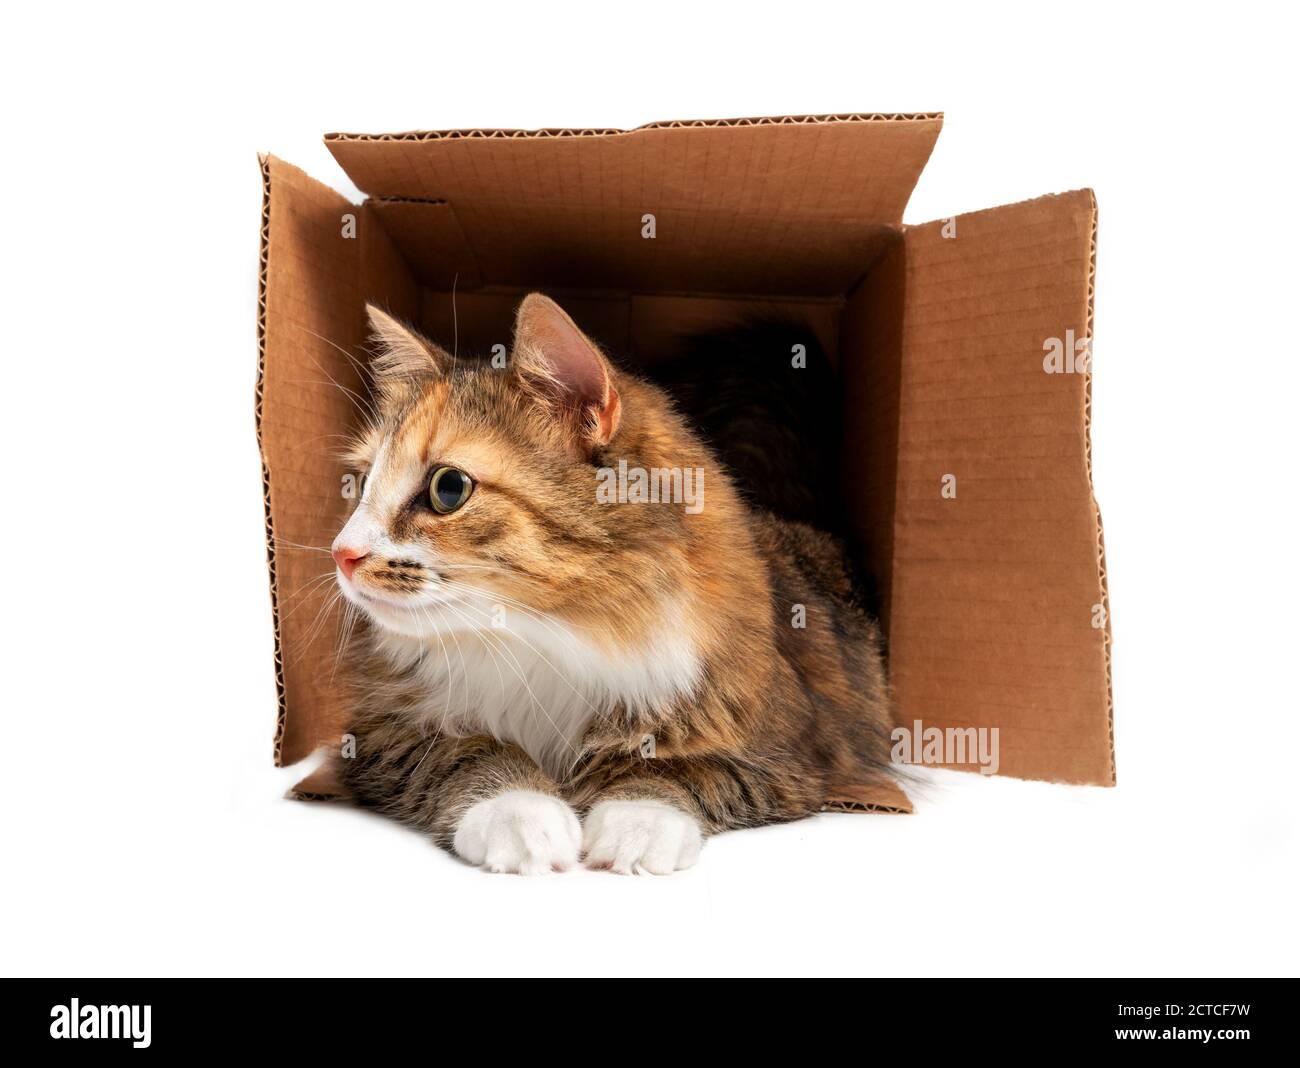 Katze im Karton. Vorderansicht der flauschigen Katze liegend mit dem ganzen Körper in der Box. 1 Jahr alte weibliche lange Haare calico oder torbie Katze. Stockfoto